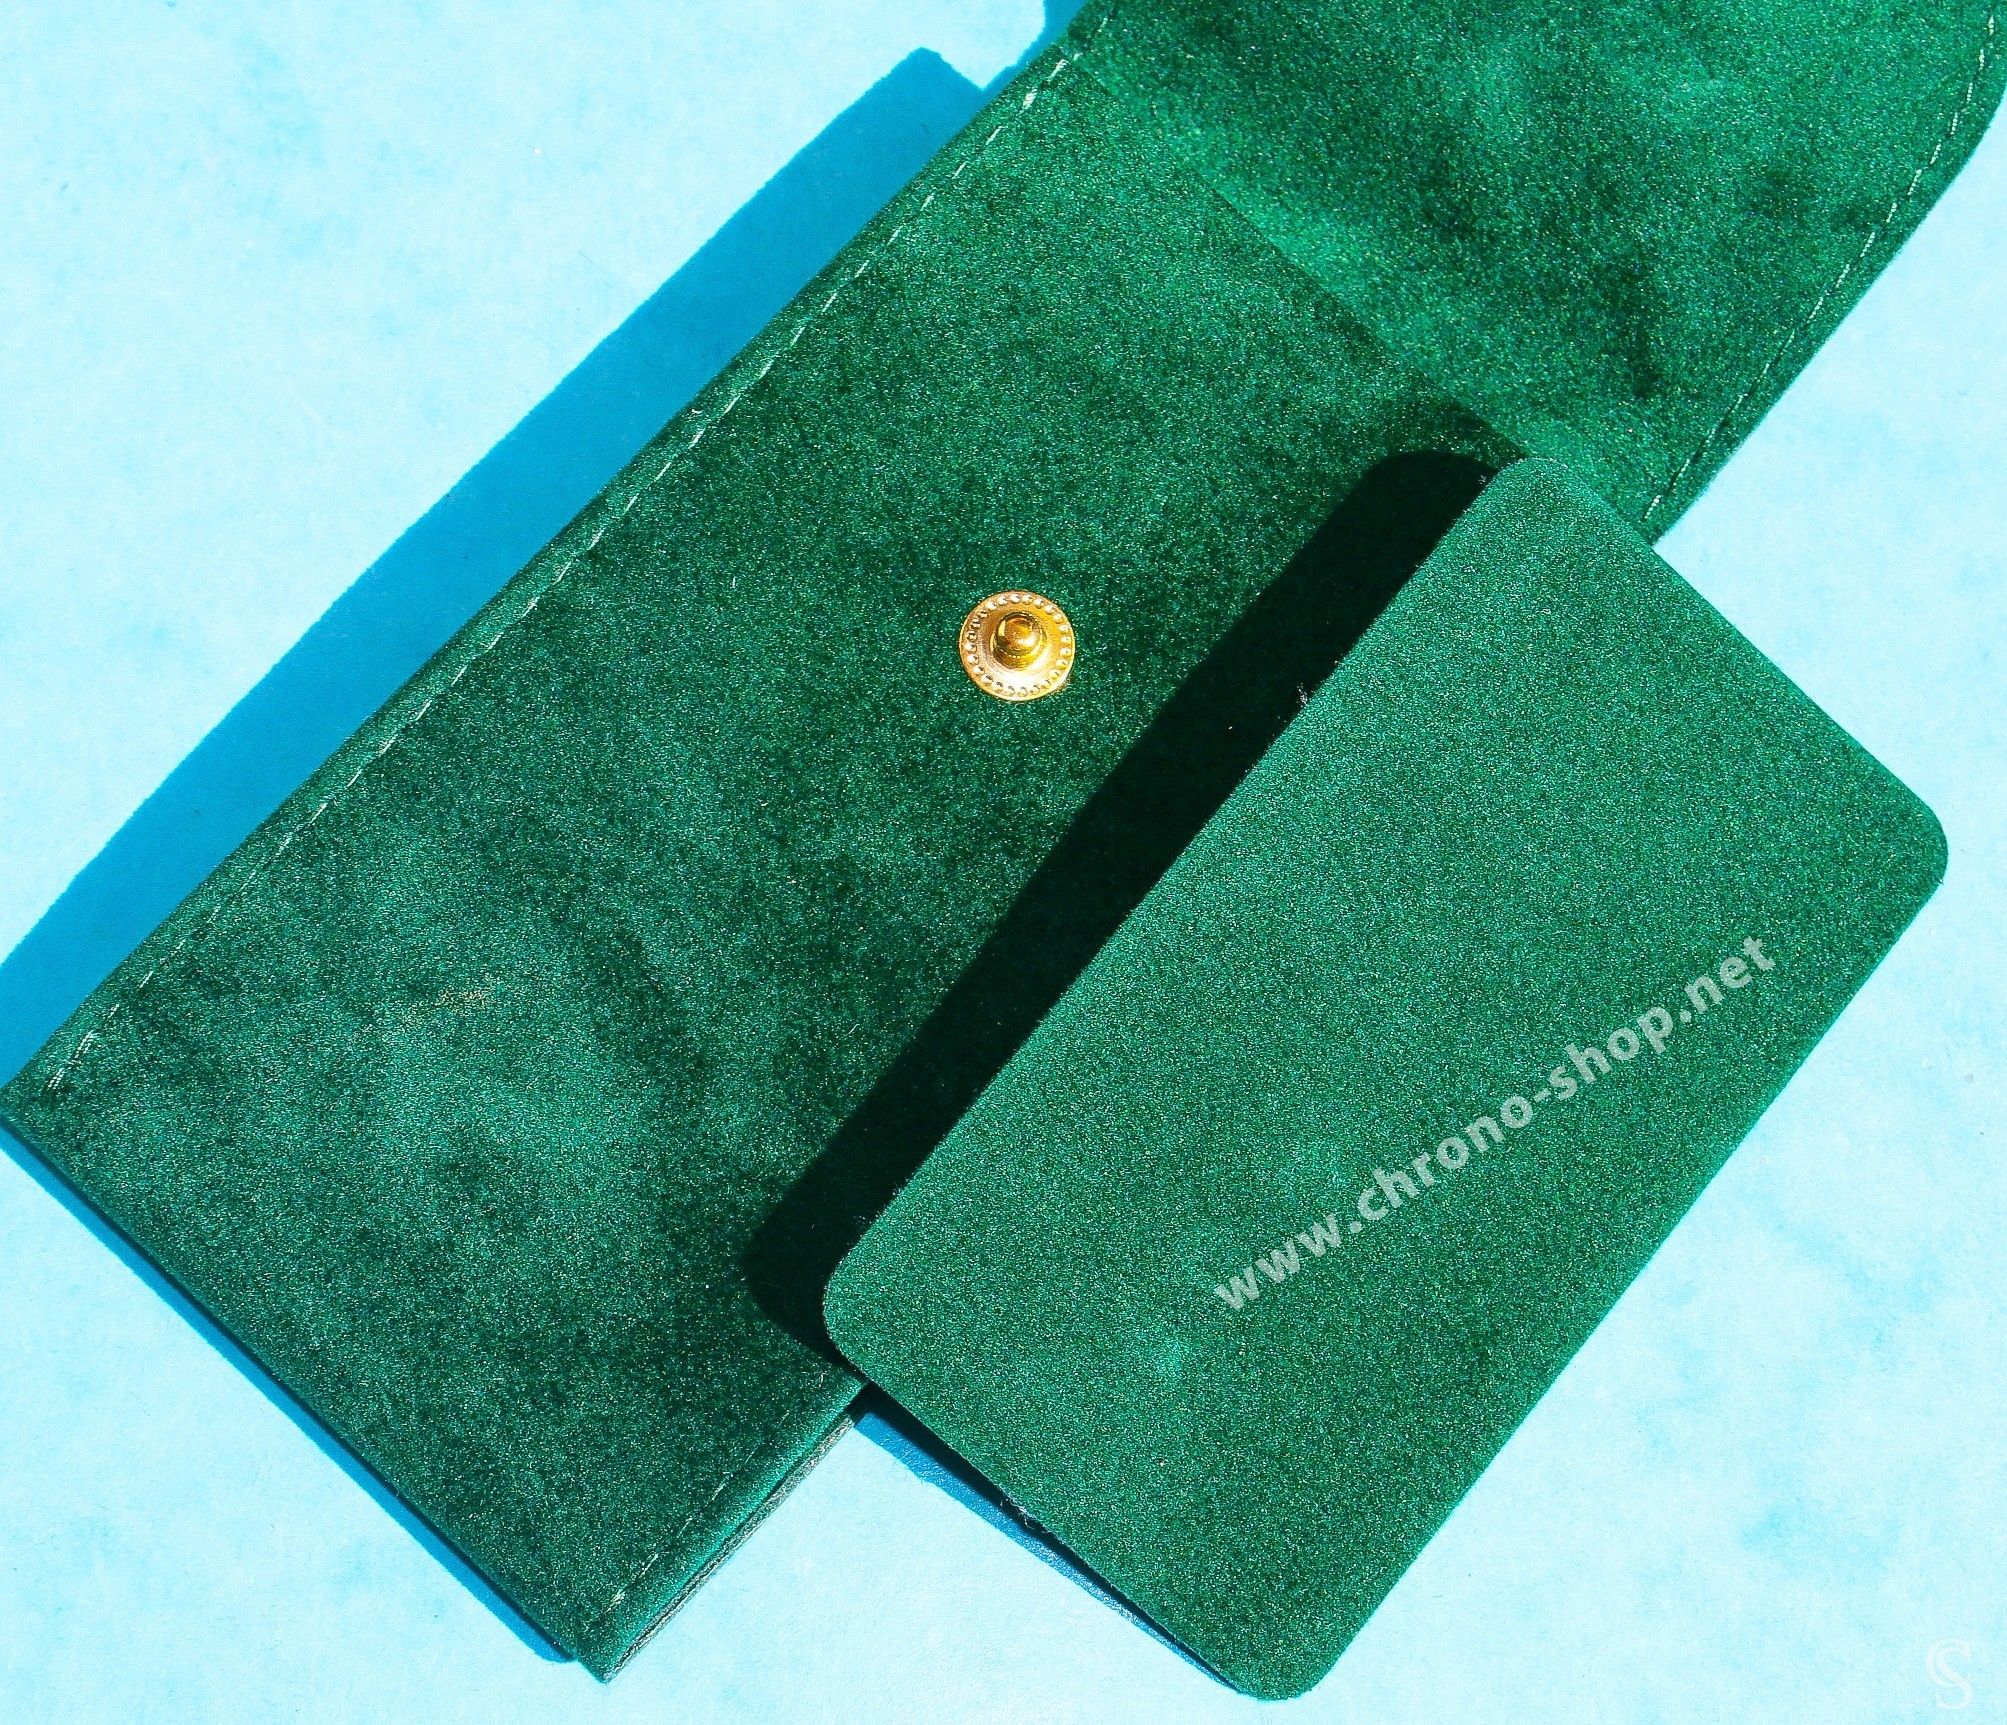 Rolex Original green suede velvet pouch traveler's service holder case ...